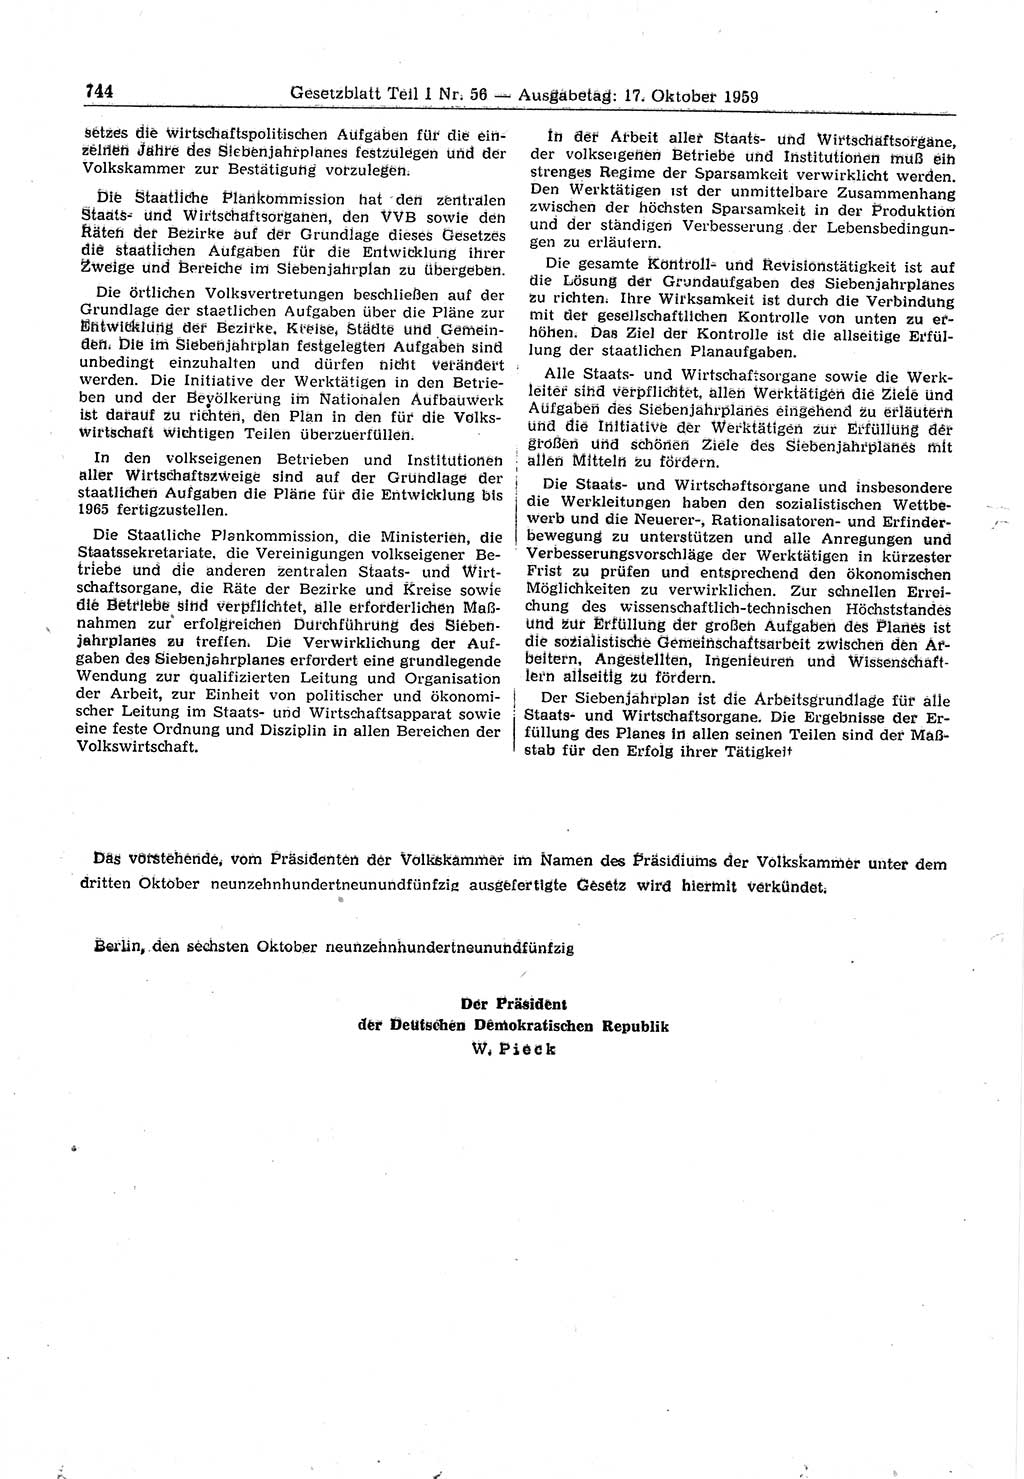 Gesetzblatt (GBl.) der Deutschen Demokratischen Republik (DDR) Teil Ⅰ 1959, Seite 744 (GBl. DDR Ⅰ 1959, S. 744)